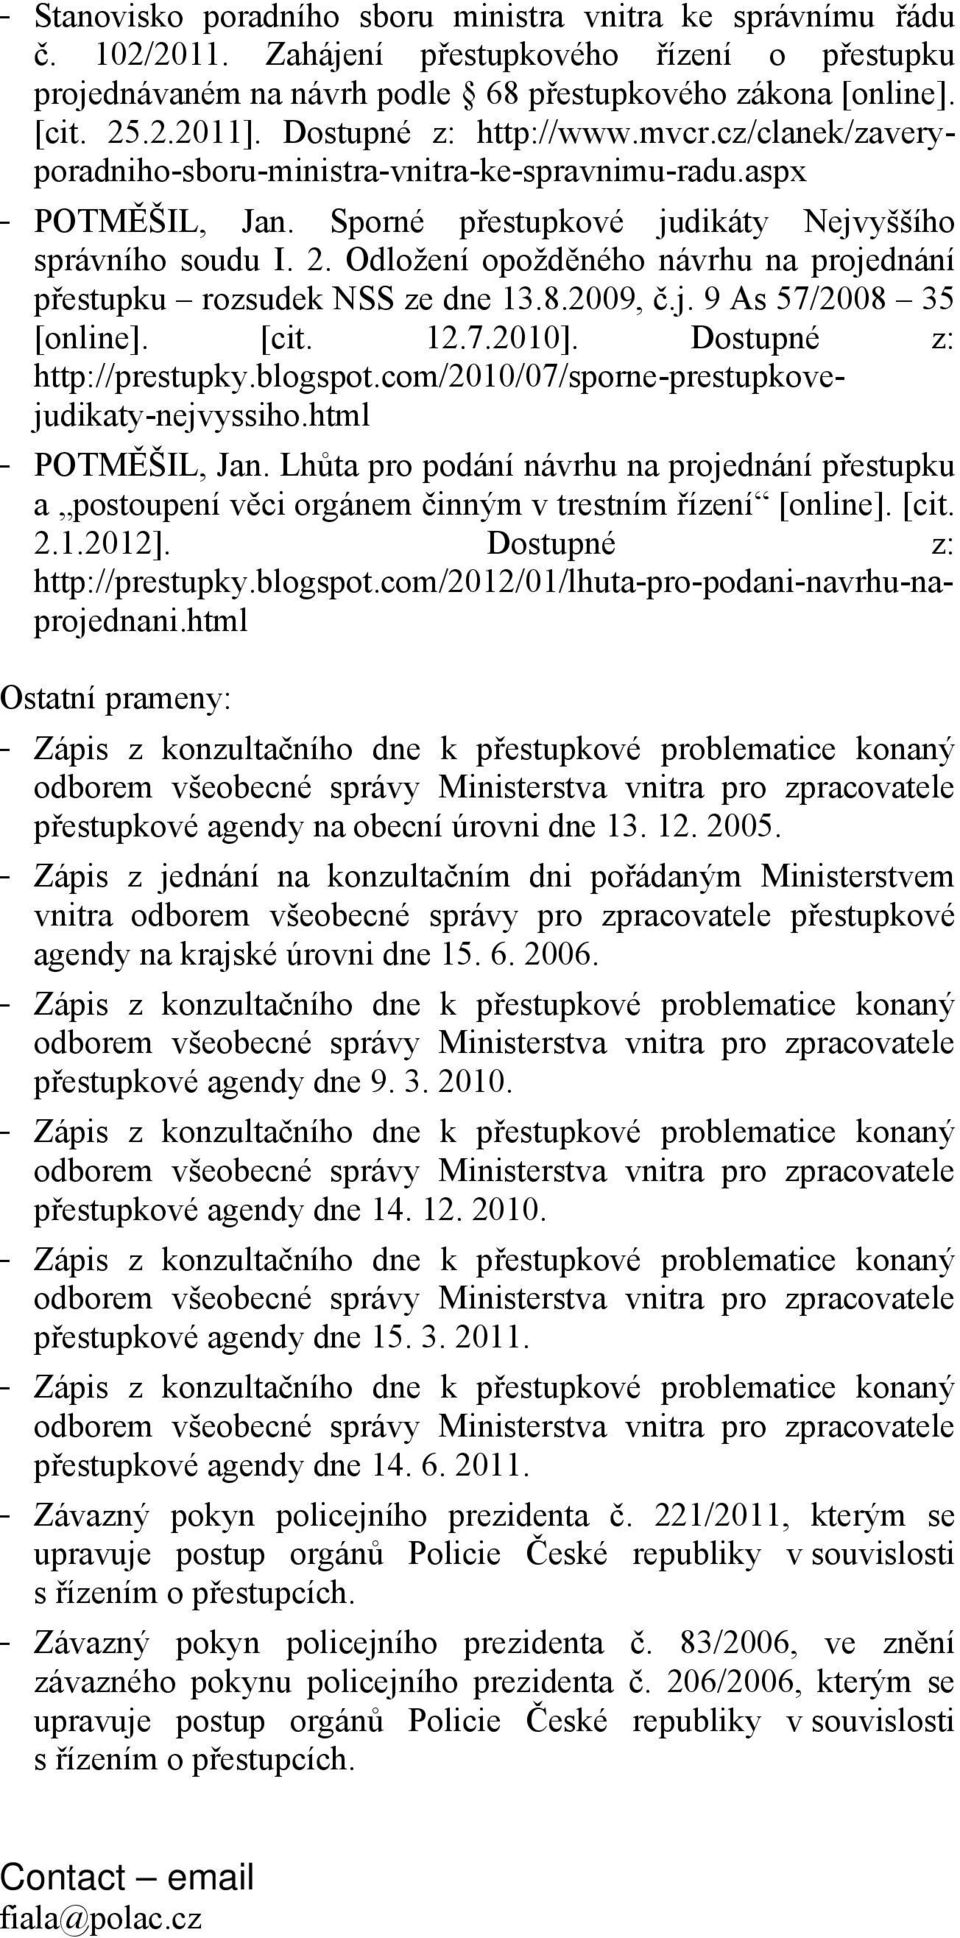 Odložení opožděného návrhu na projednání přestupku rozsudek NSS ze dne 13.8.2009, č.j. 9 As 57/2008 35 [online]. [cit. 12.7.2010]. Dostupné z: http://prestupky.blogspot.